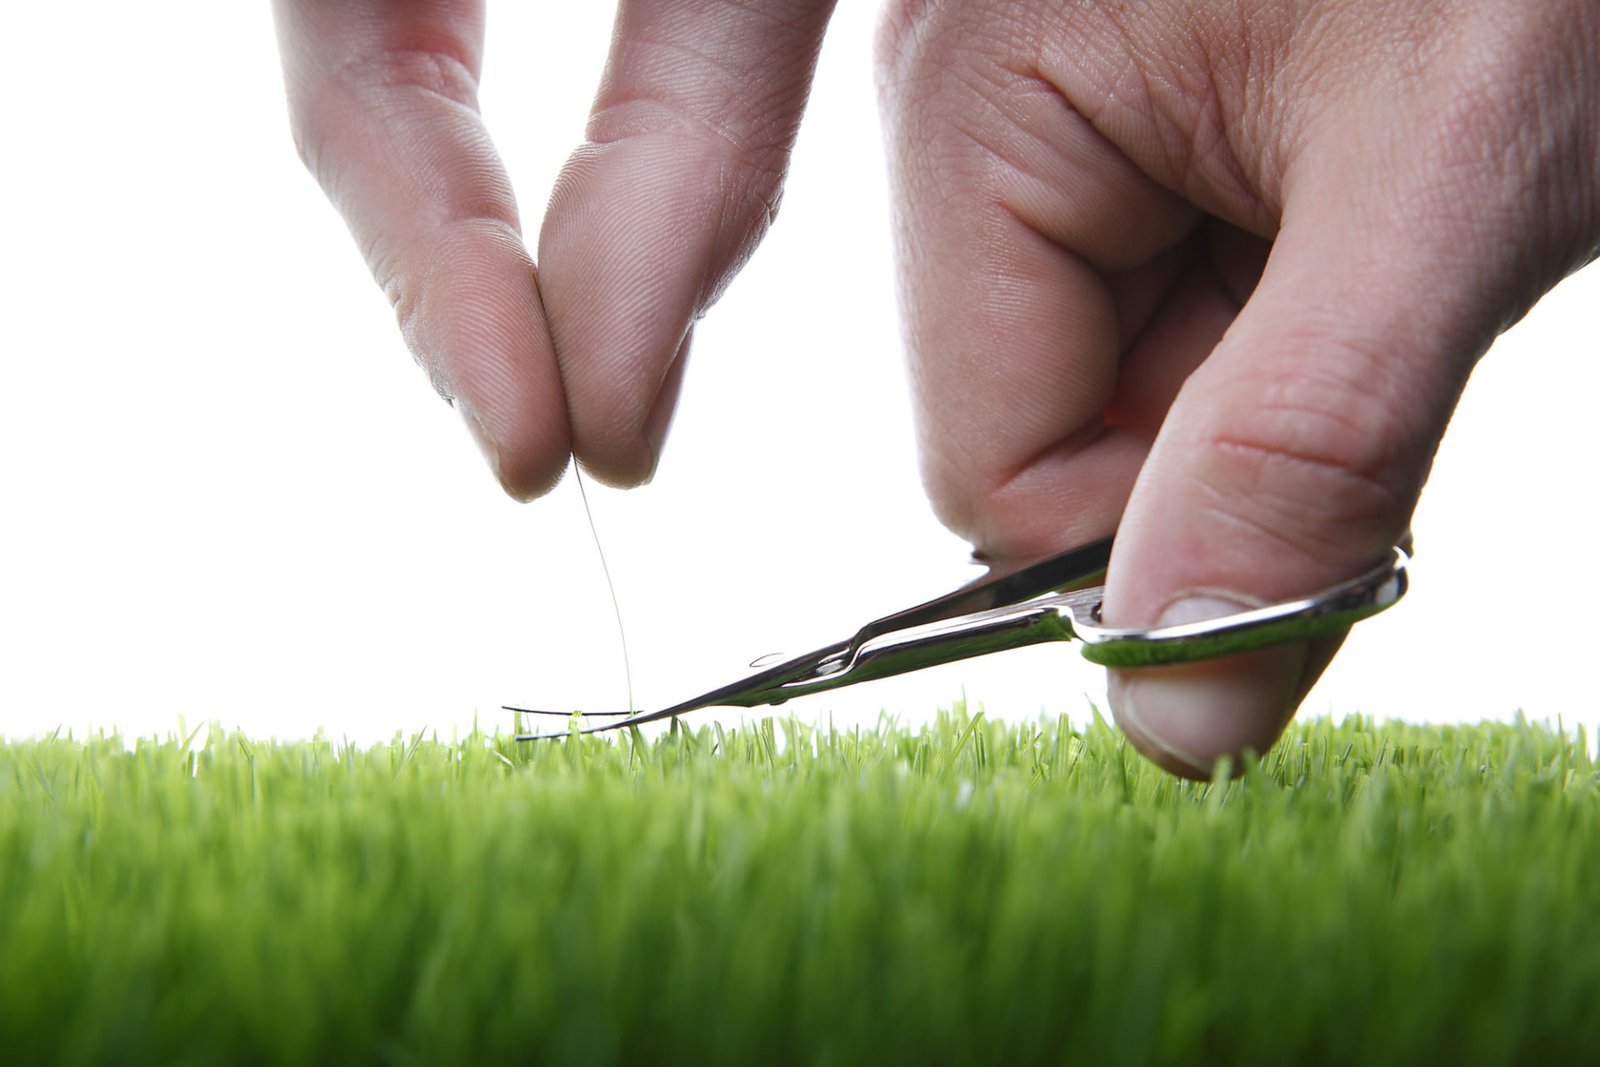 Um fio de cabelo sendo cortando rente a altura de um gramado